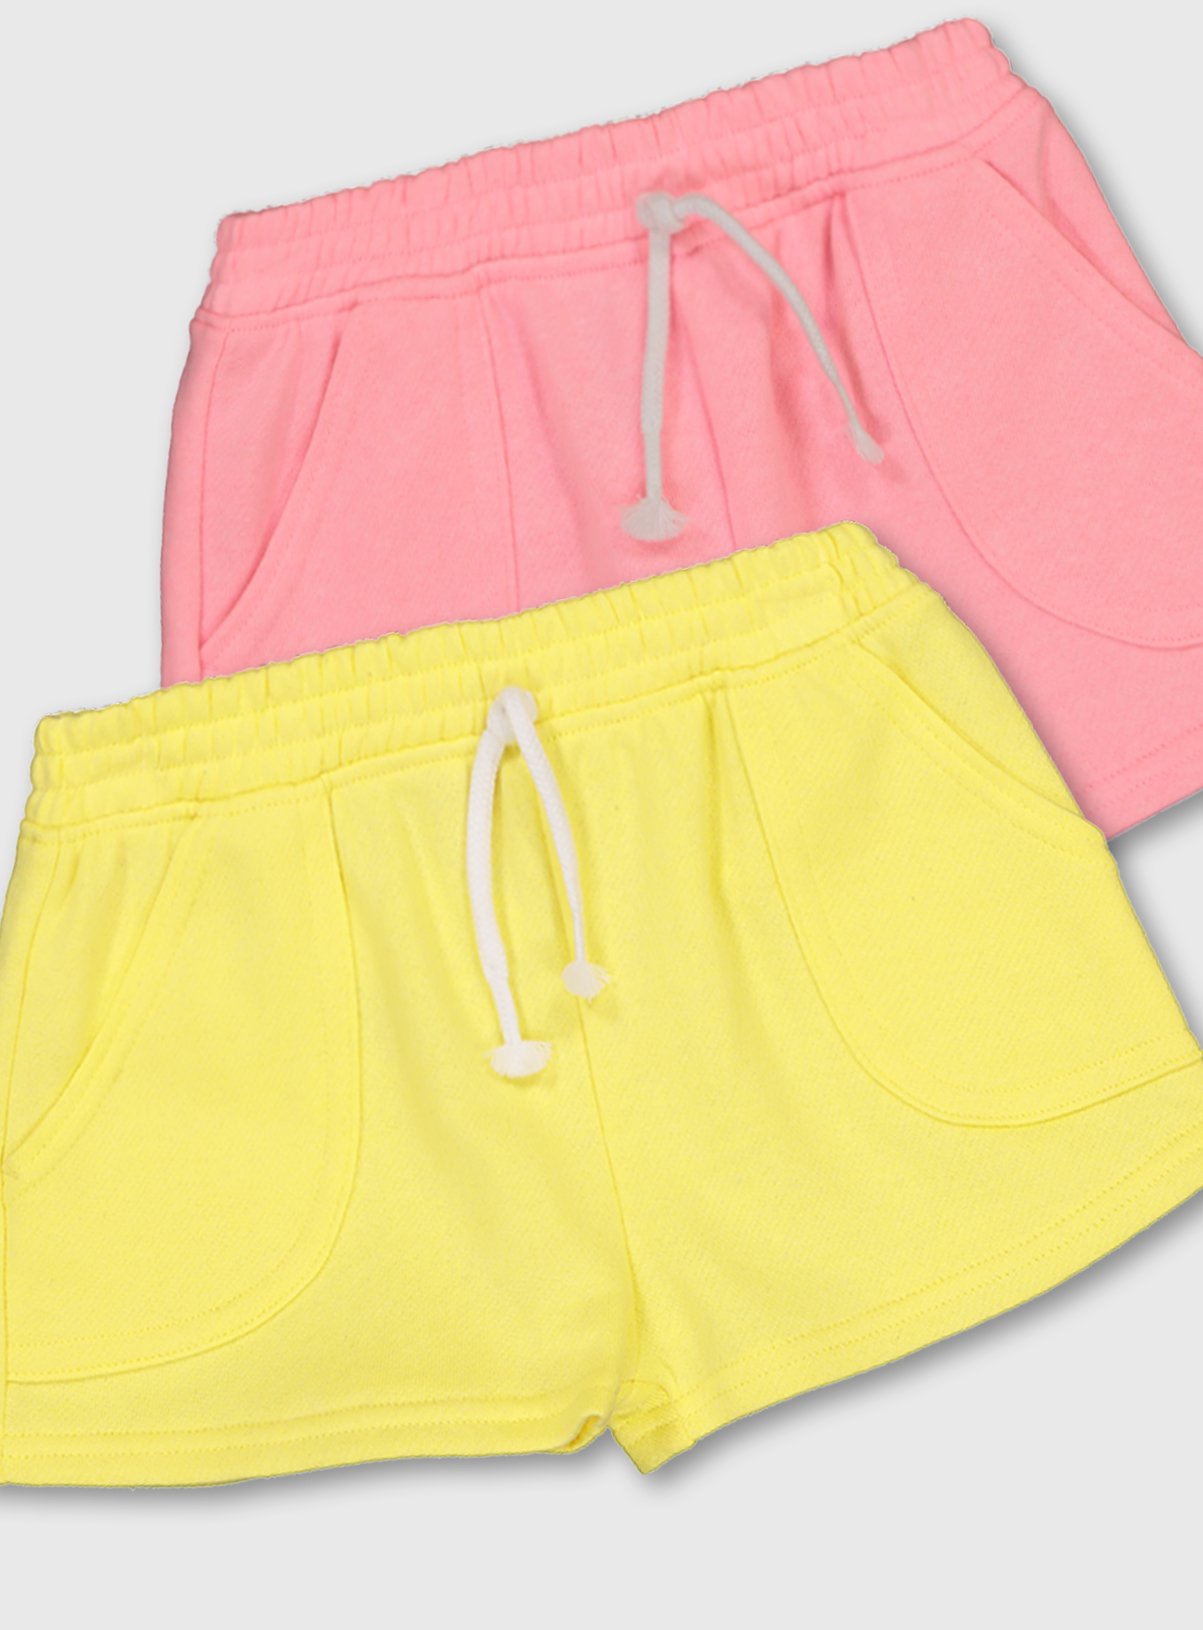 yellow jersey shorts